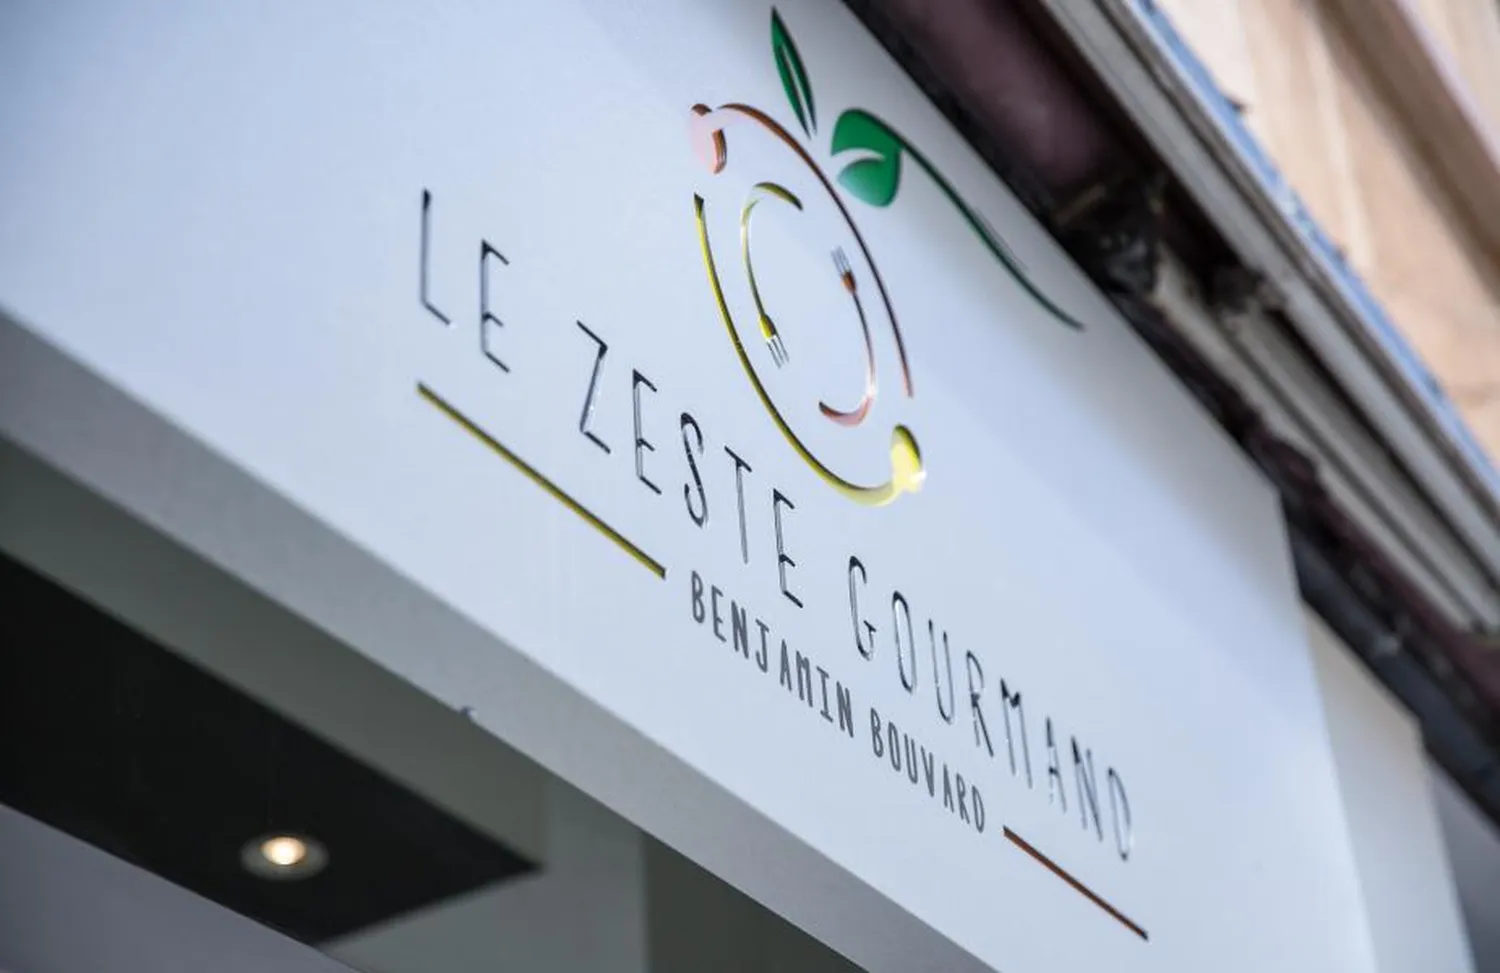 Le Zeste Gourmand restaurant Lyon